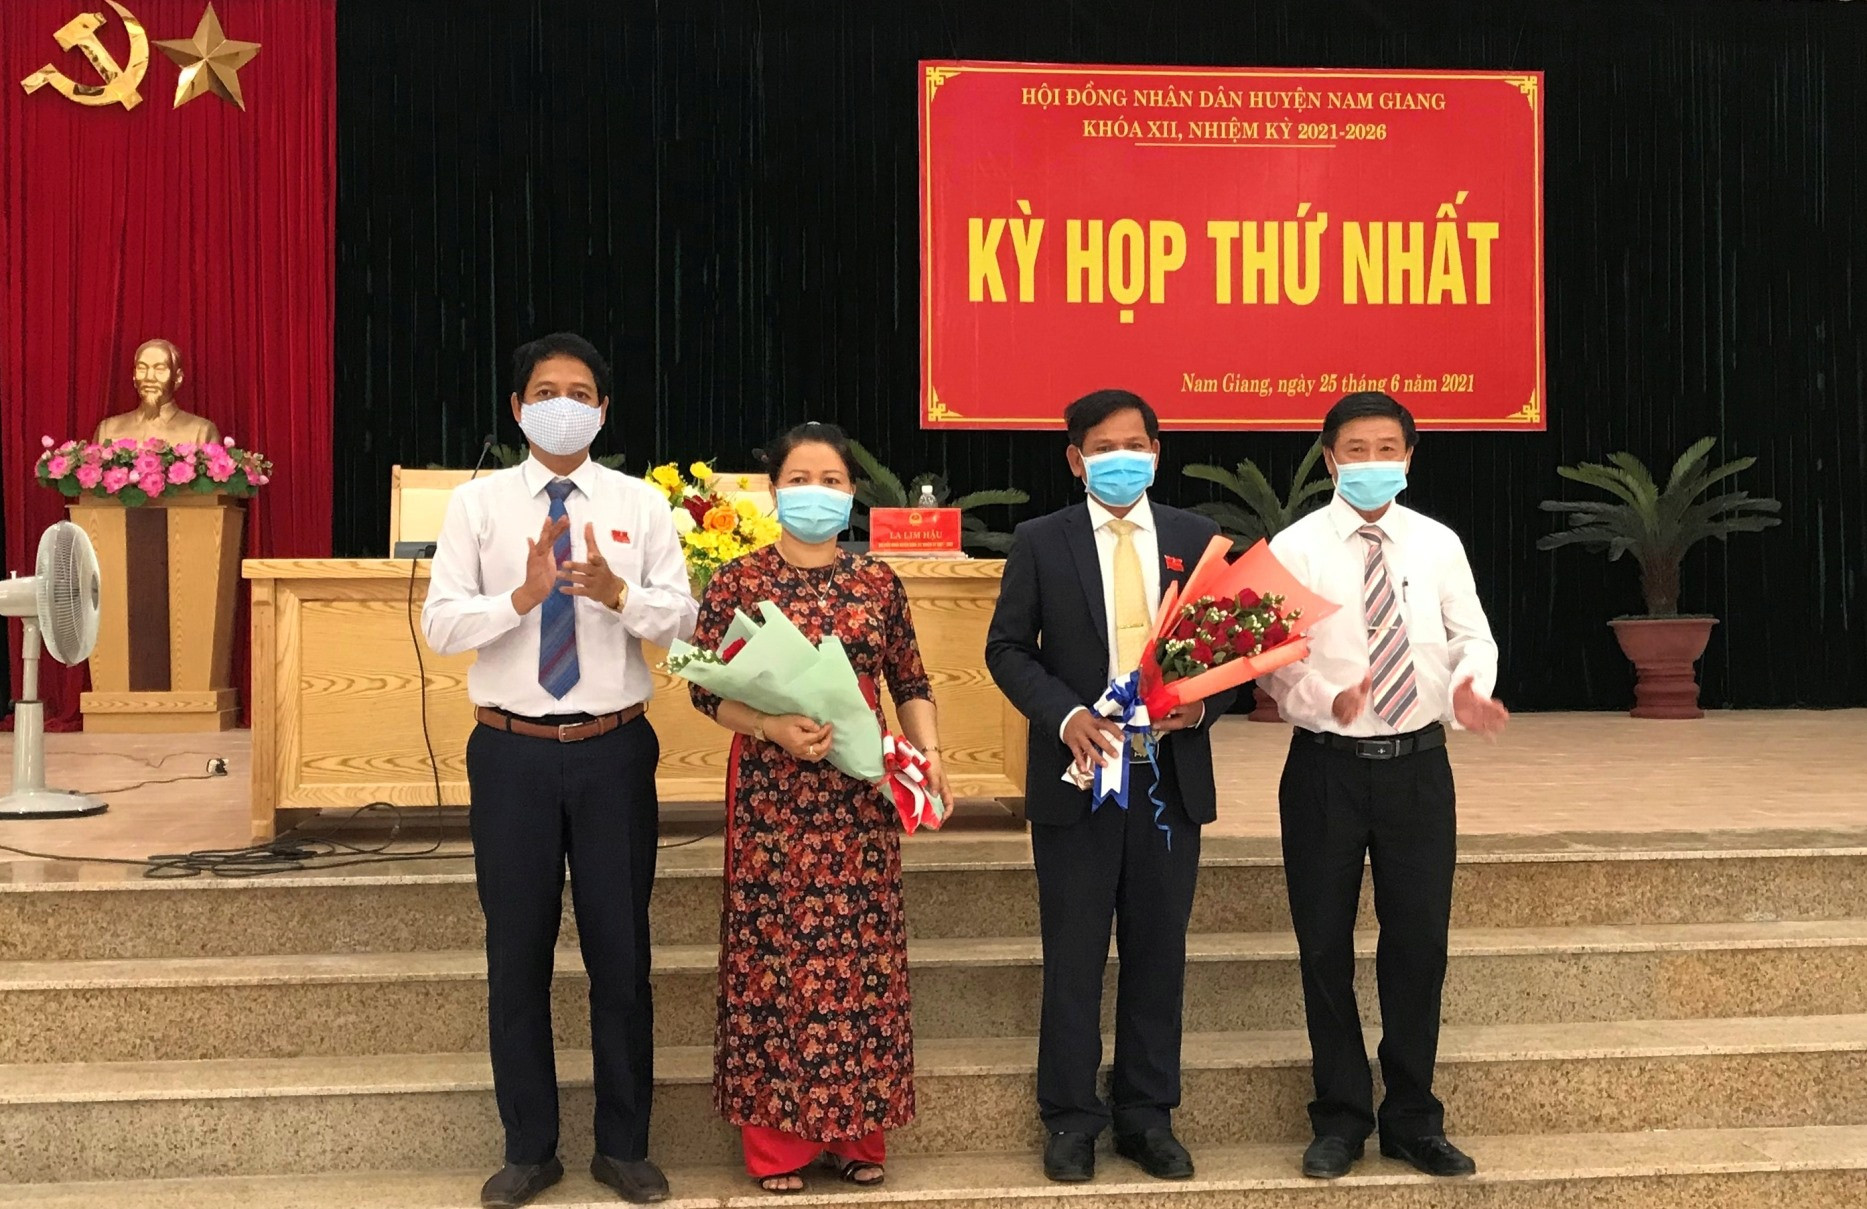 Ông La Lim Hậu ( cầm hoa) và Bà Zơ Râm Thị Hai tái cử chức danh Chủ tịchHĐND và phó chủ tịch HĐND huyện Nam Giang nhiệm kỳ 2021-2026